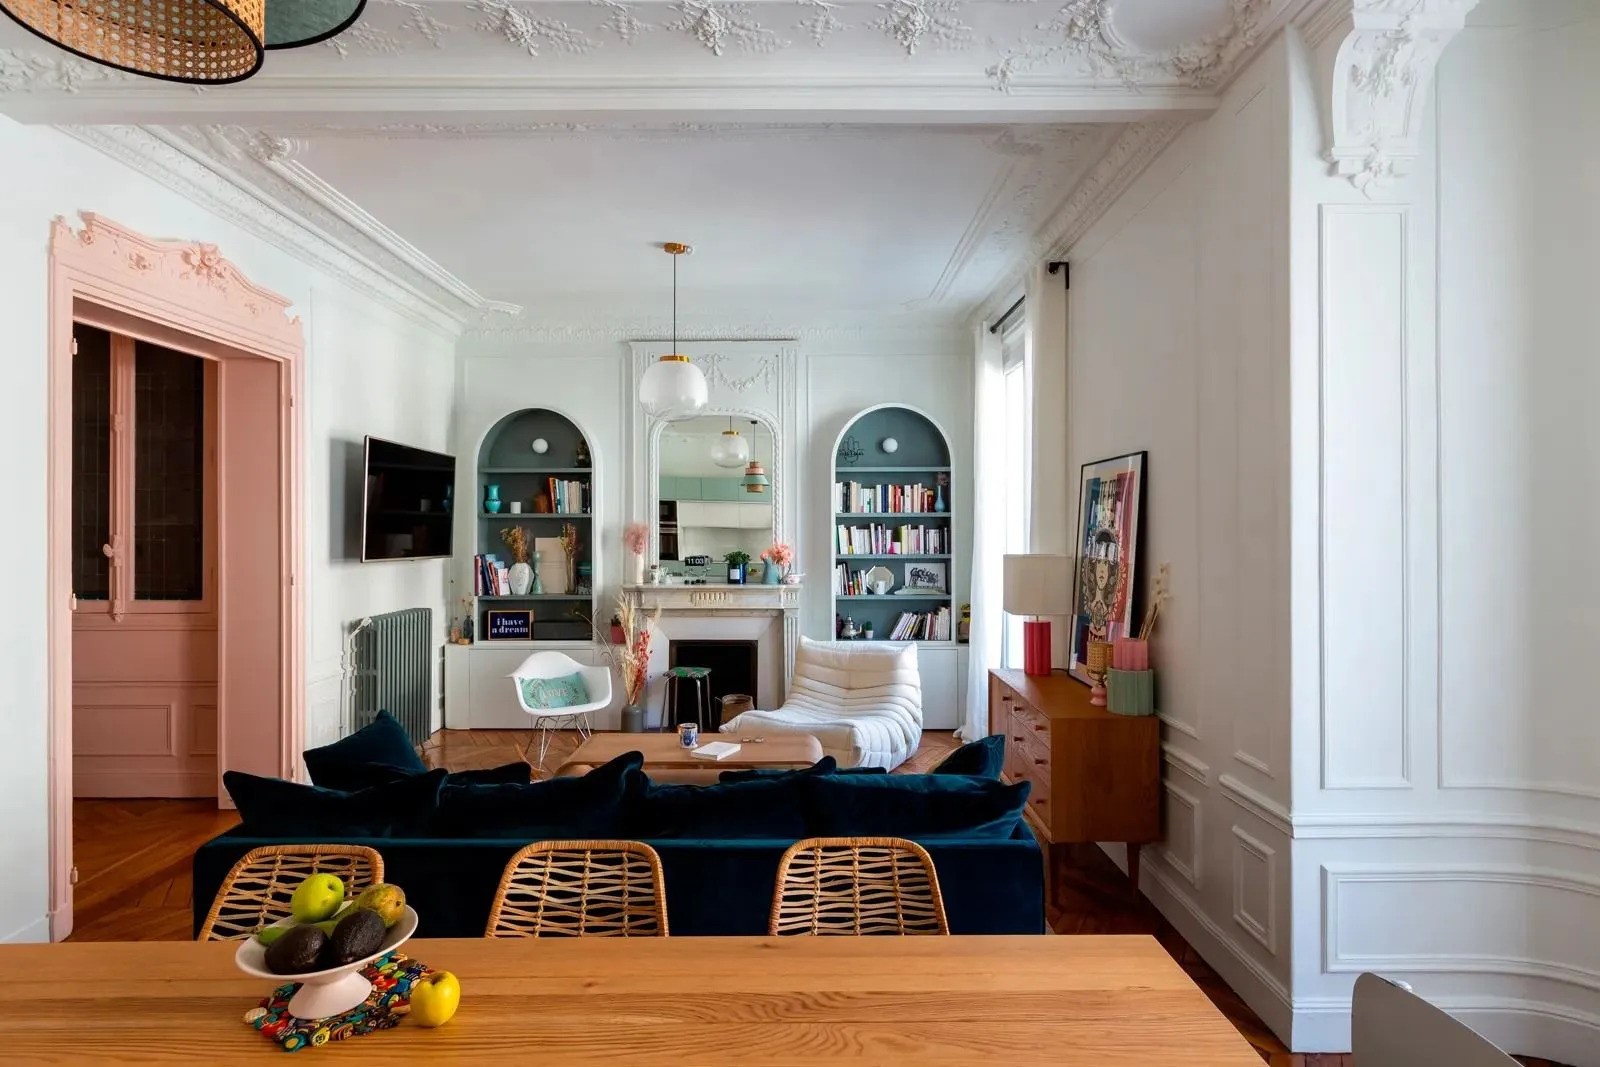 Séjour d'un appartement parisien classique joliment coloré avec encadrement de porte rose